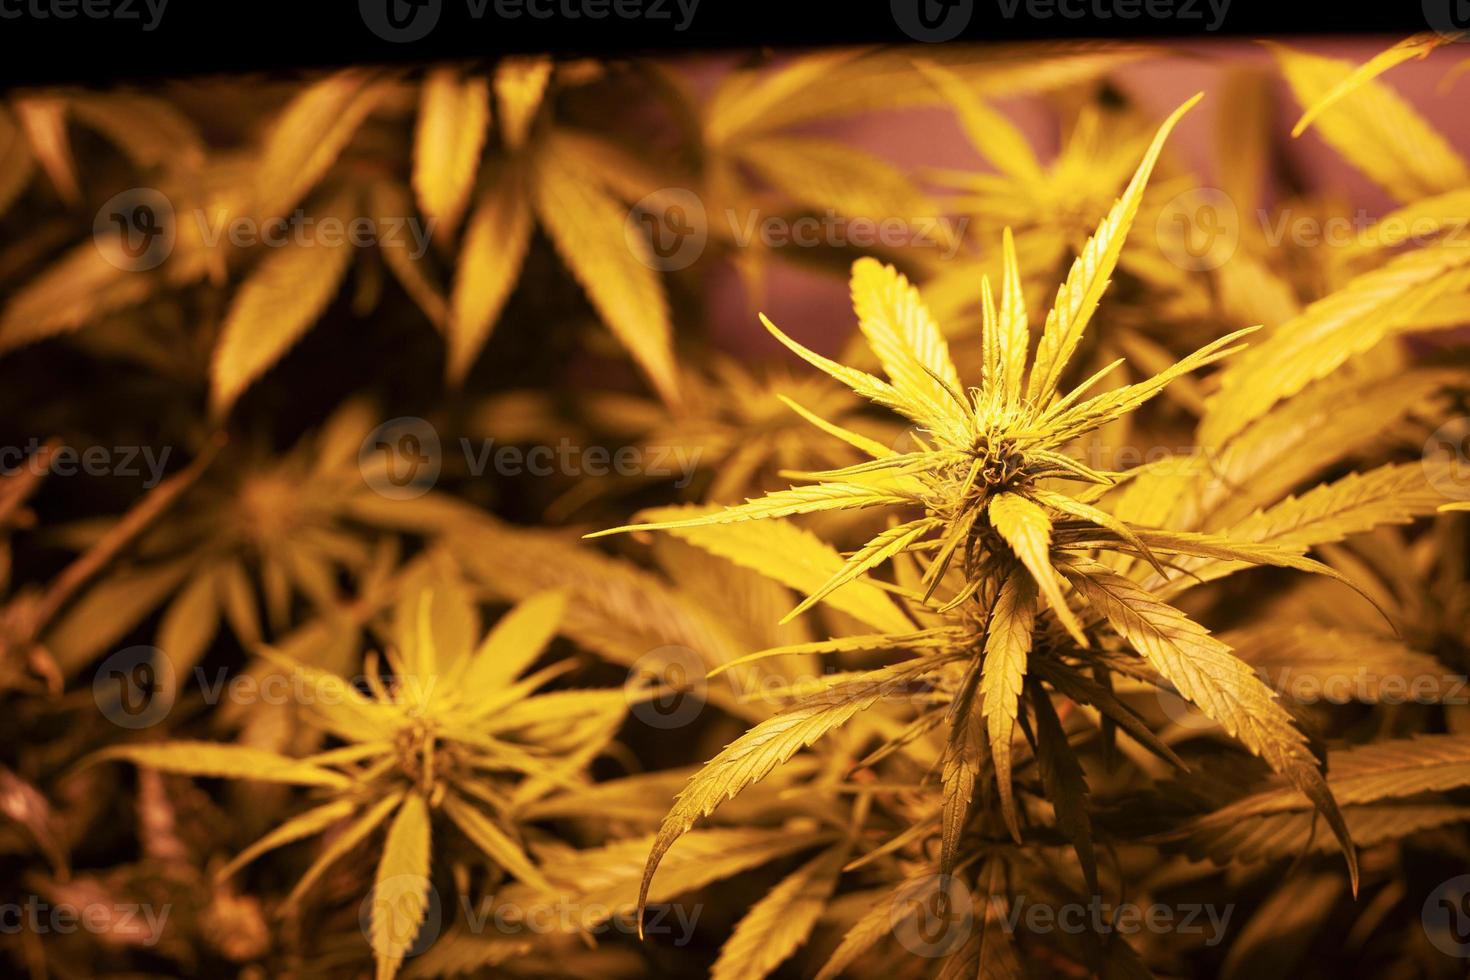 odla medicinsk marijuana inomhus under konstgjord ljuslampa foto